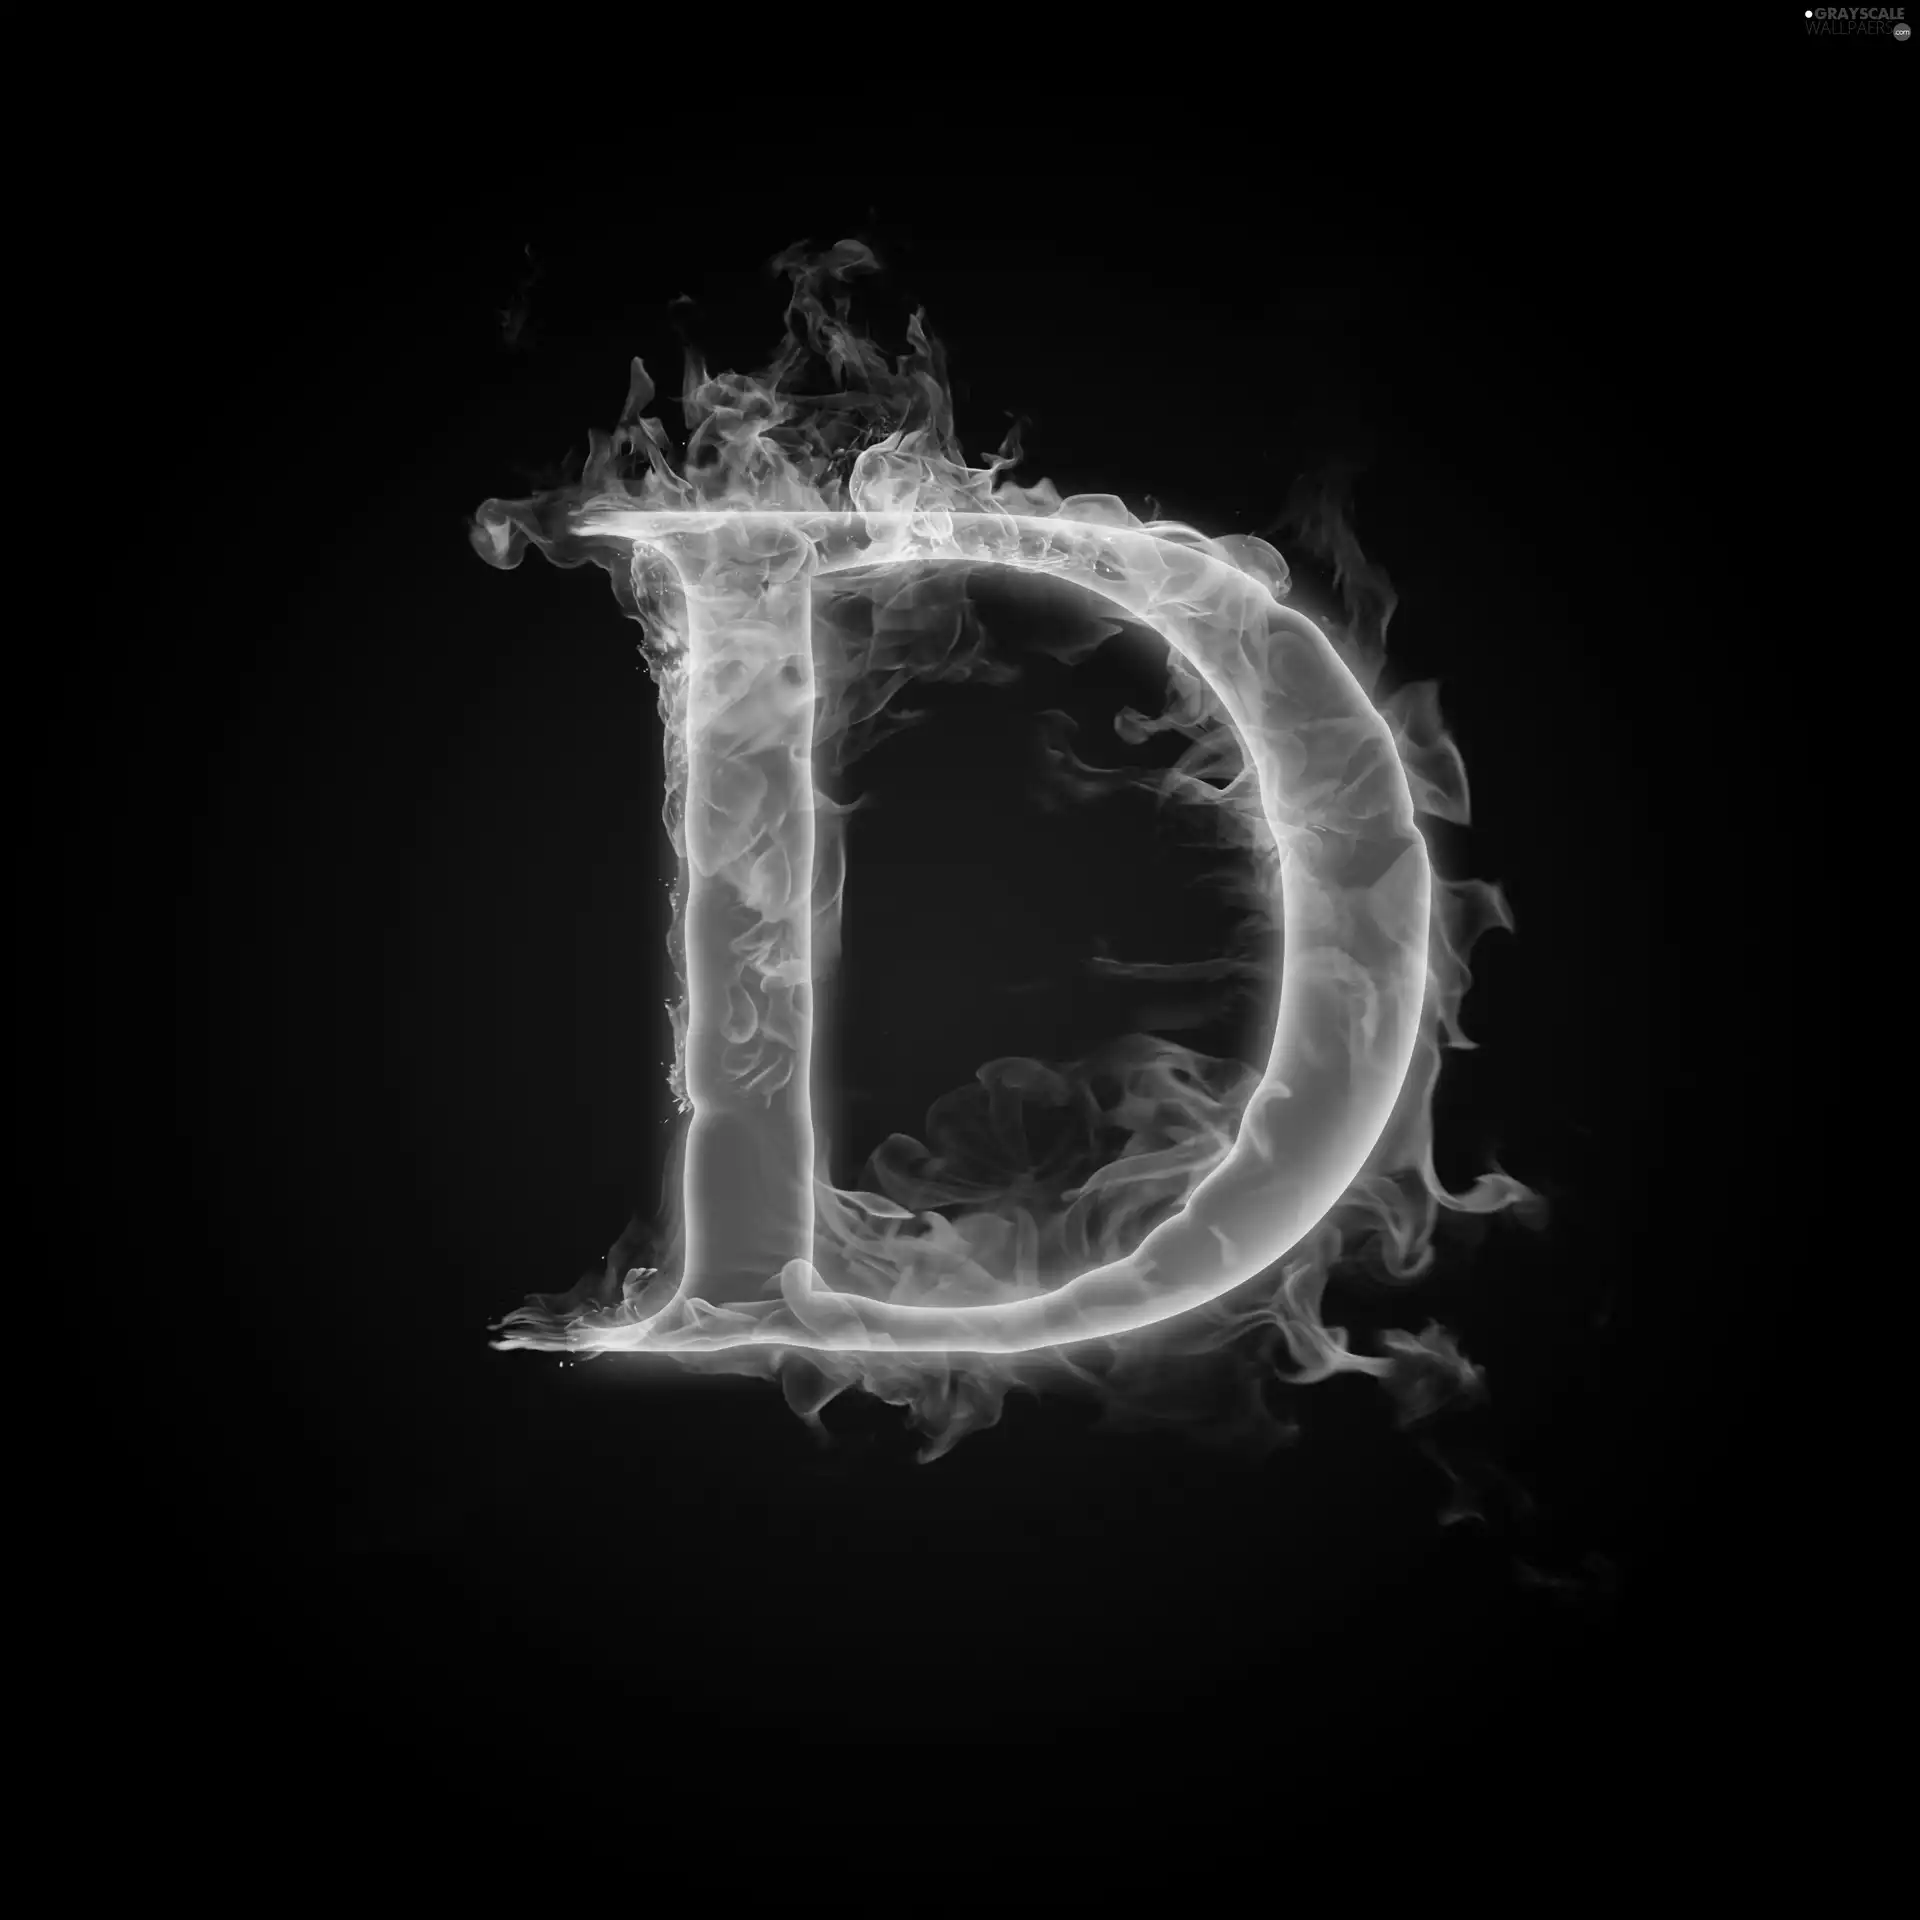 D, Fire, letter